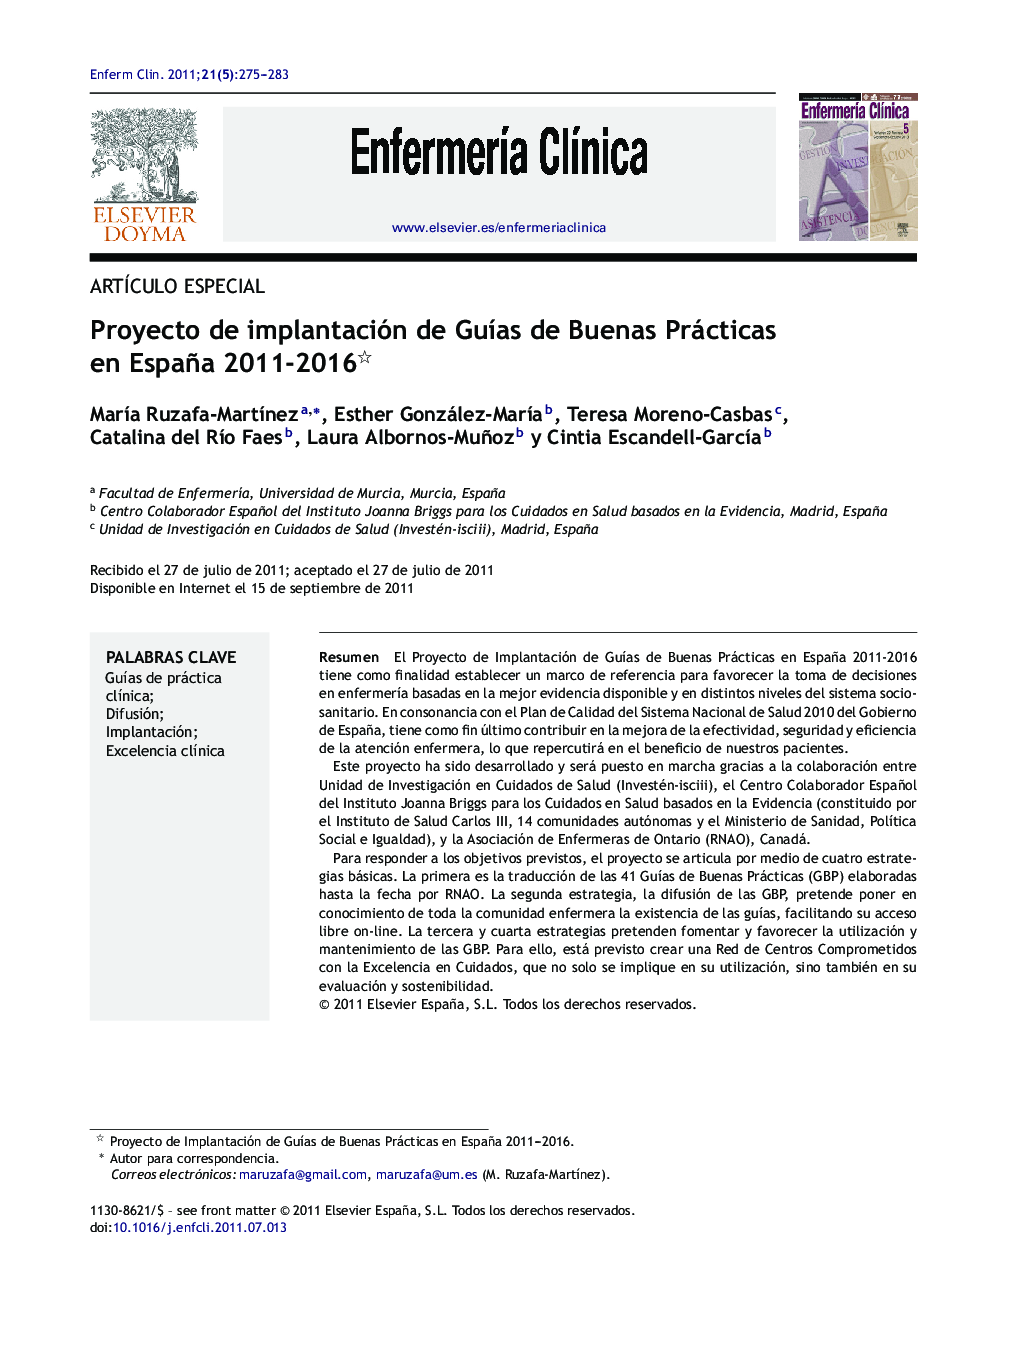 Proyecto de implantación de GuÃ­as de Buenas Prácticas en España 2011-2016